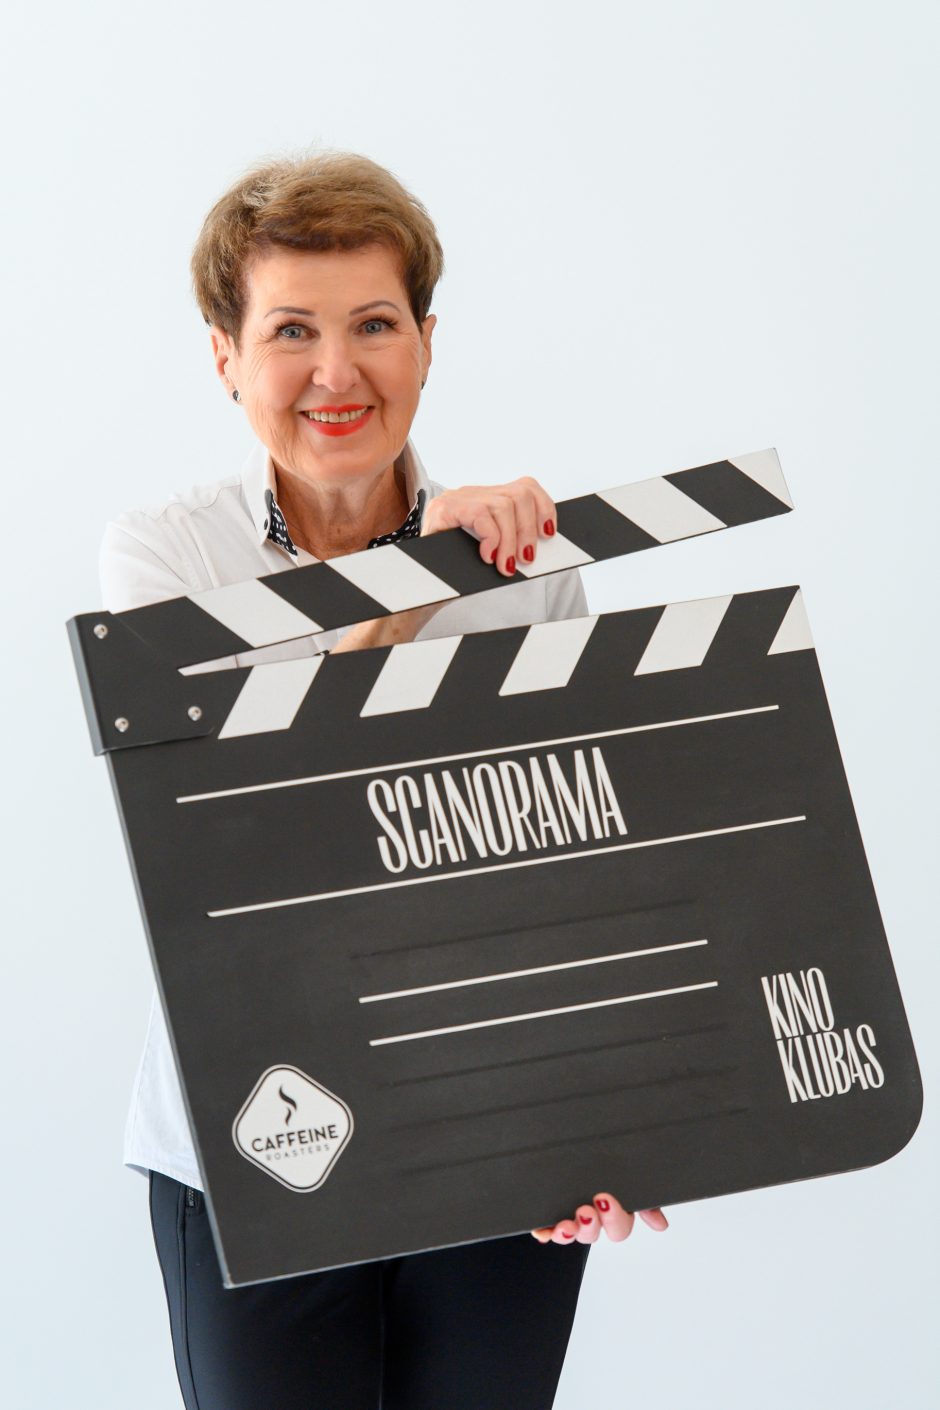 Skelbiamas „Scanoramos“ įkūrėjos G. Arlickaitės filmų dešimtukas: ko nepraleisti?